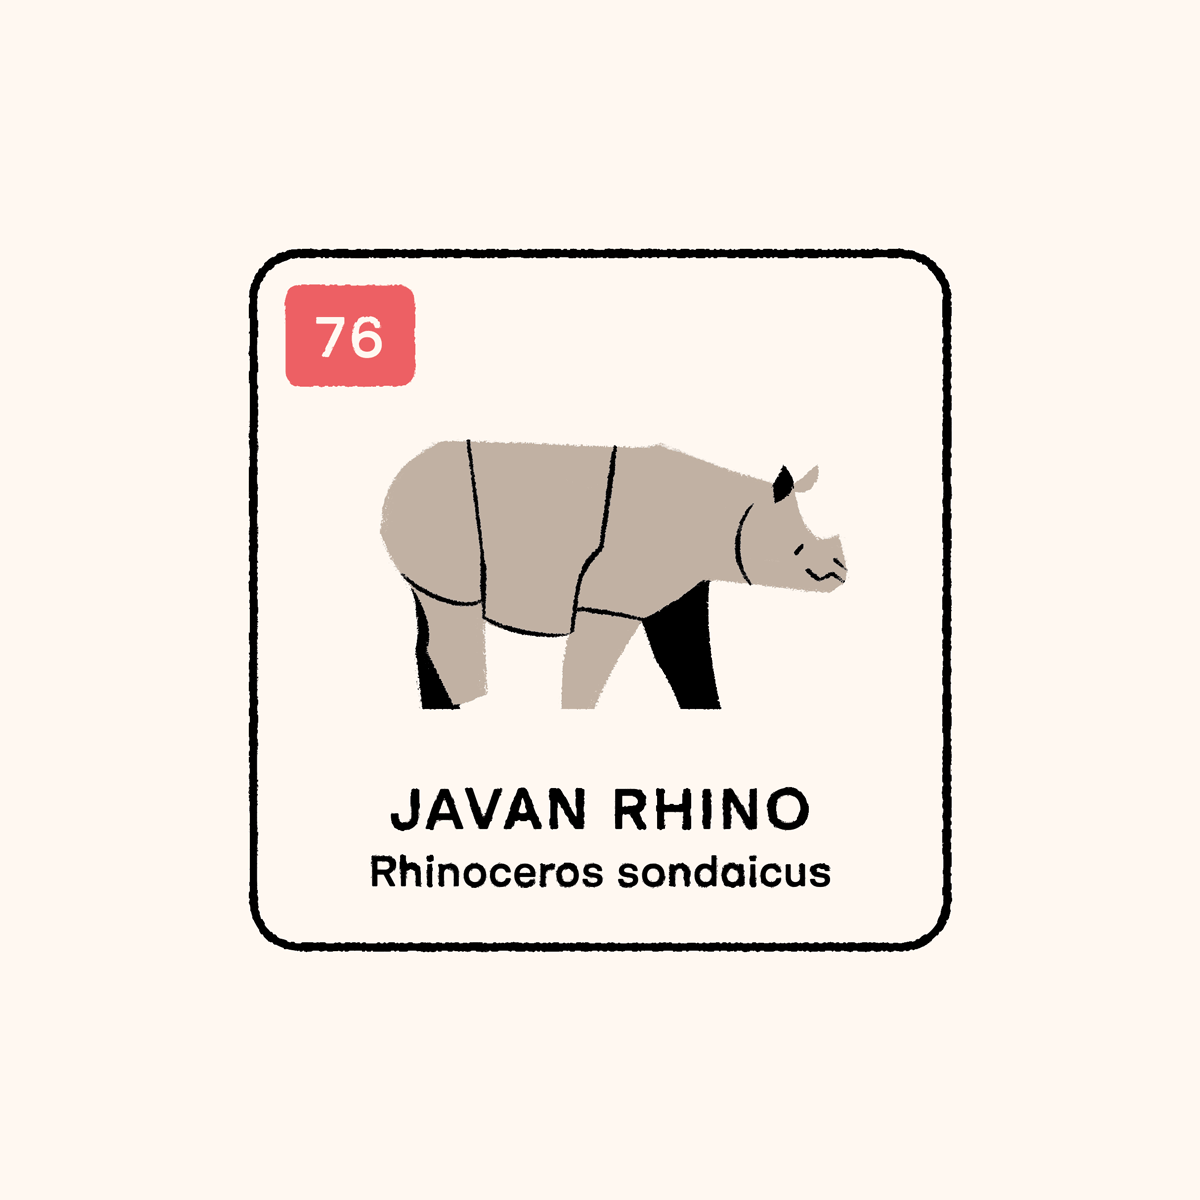 76 Javan rhinos